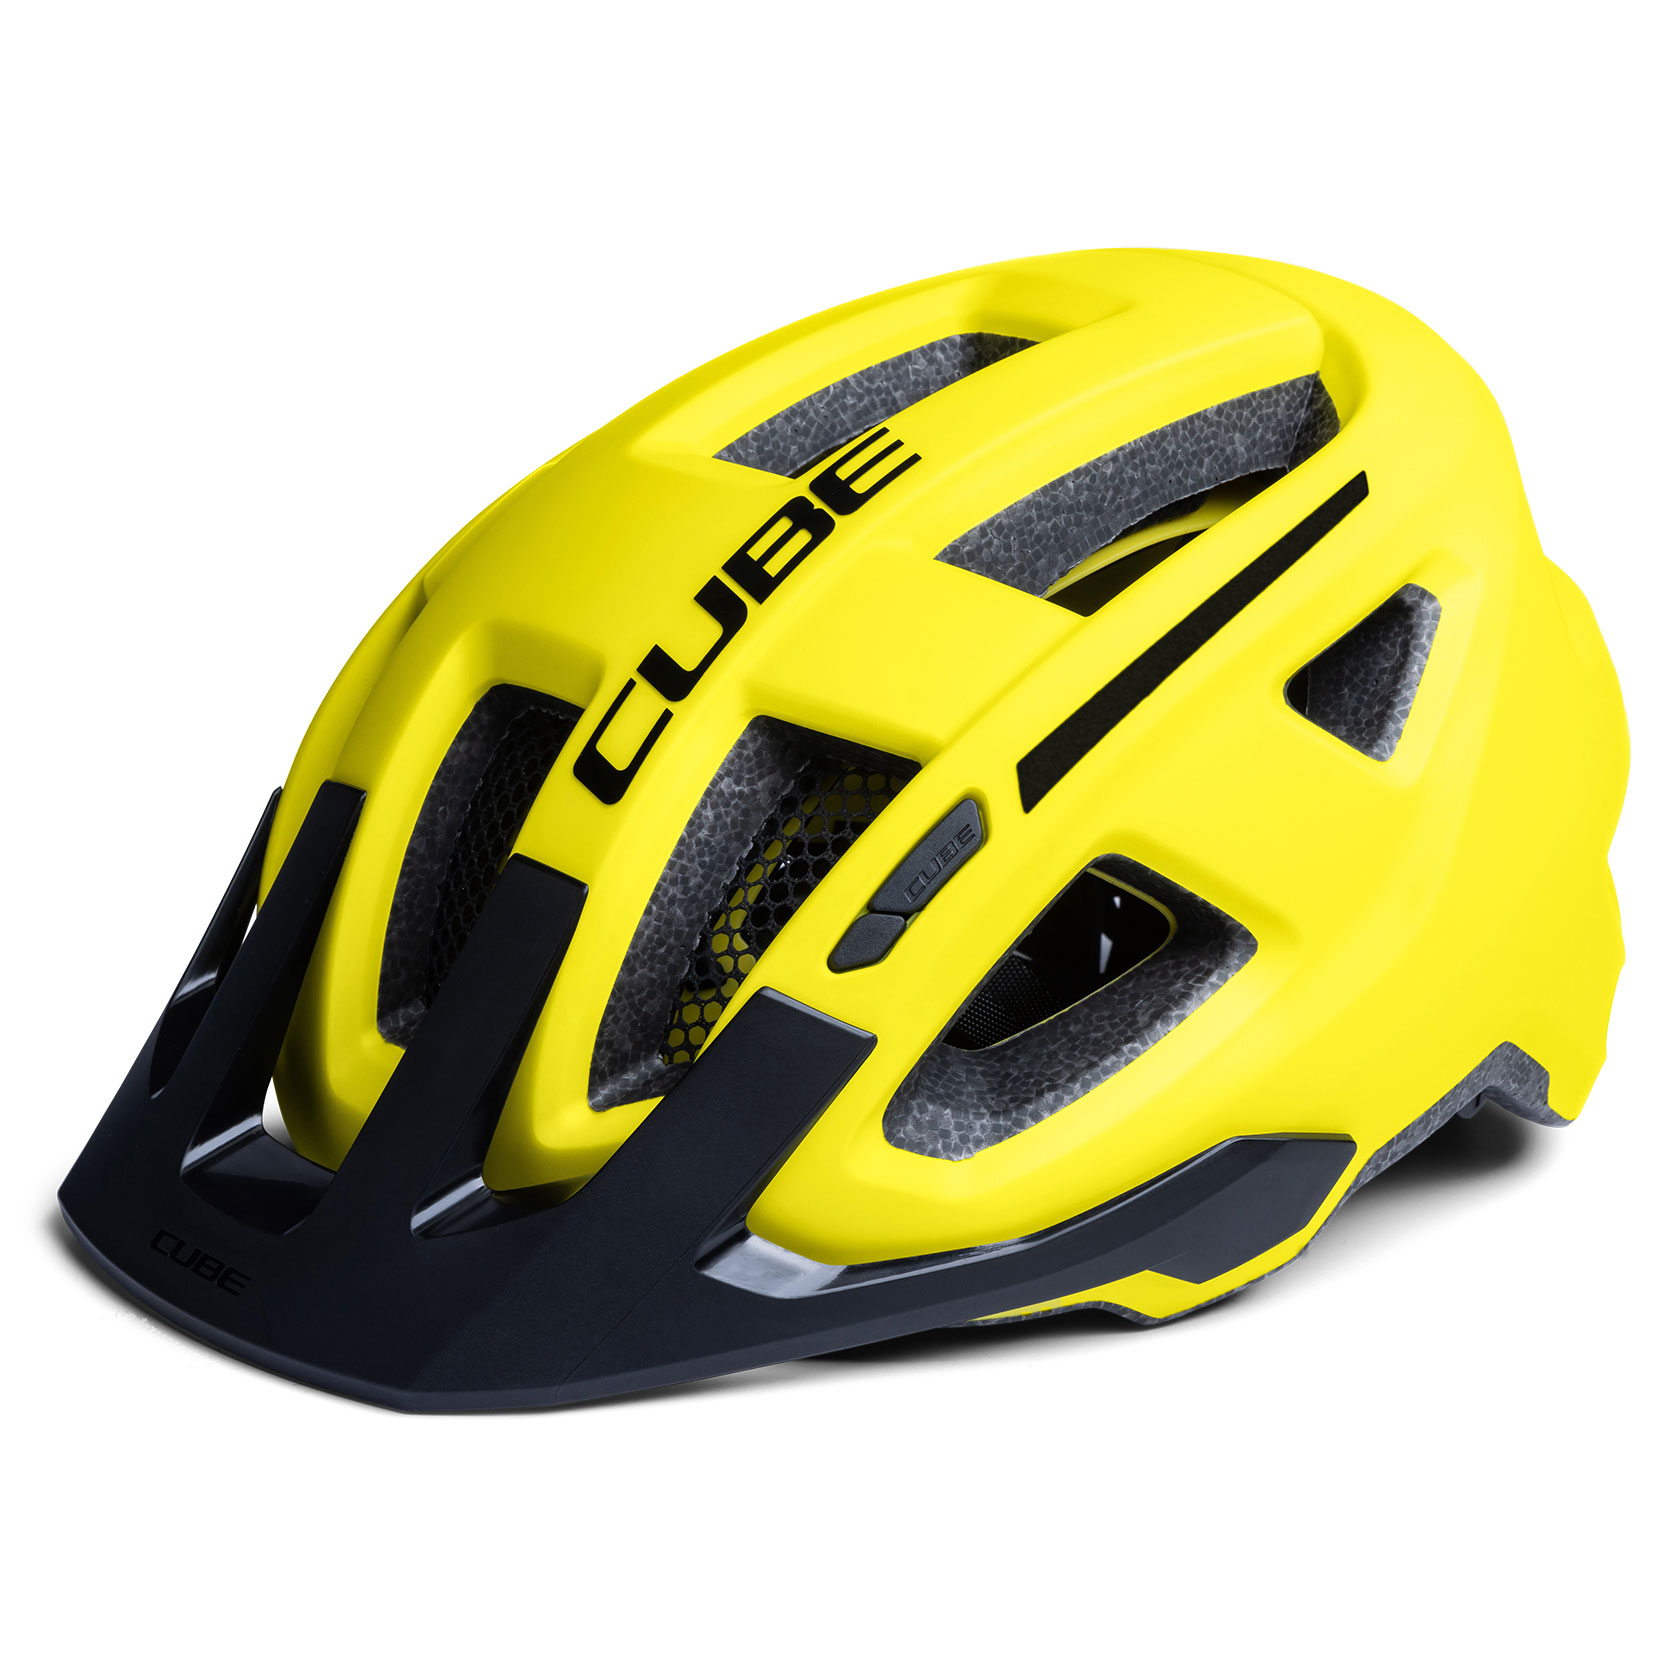 Produktbild von CUBE FLEET Helm - gelb